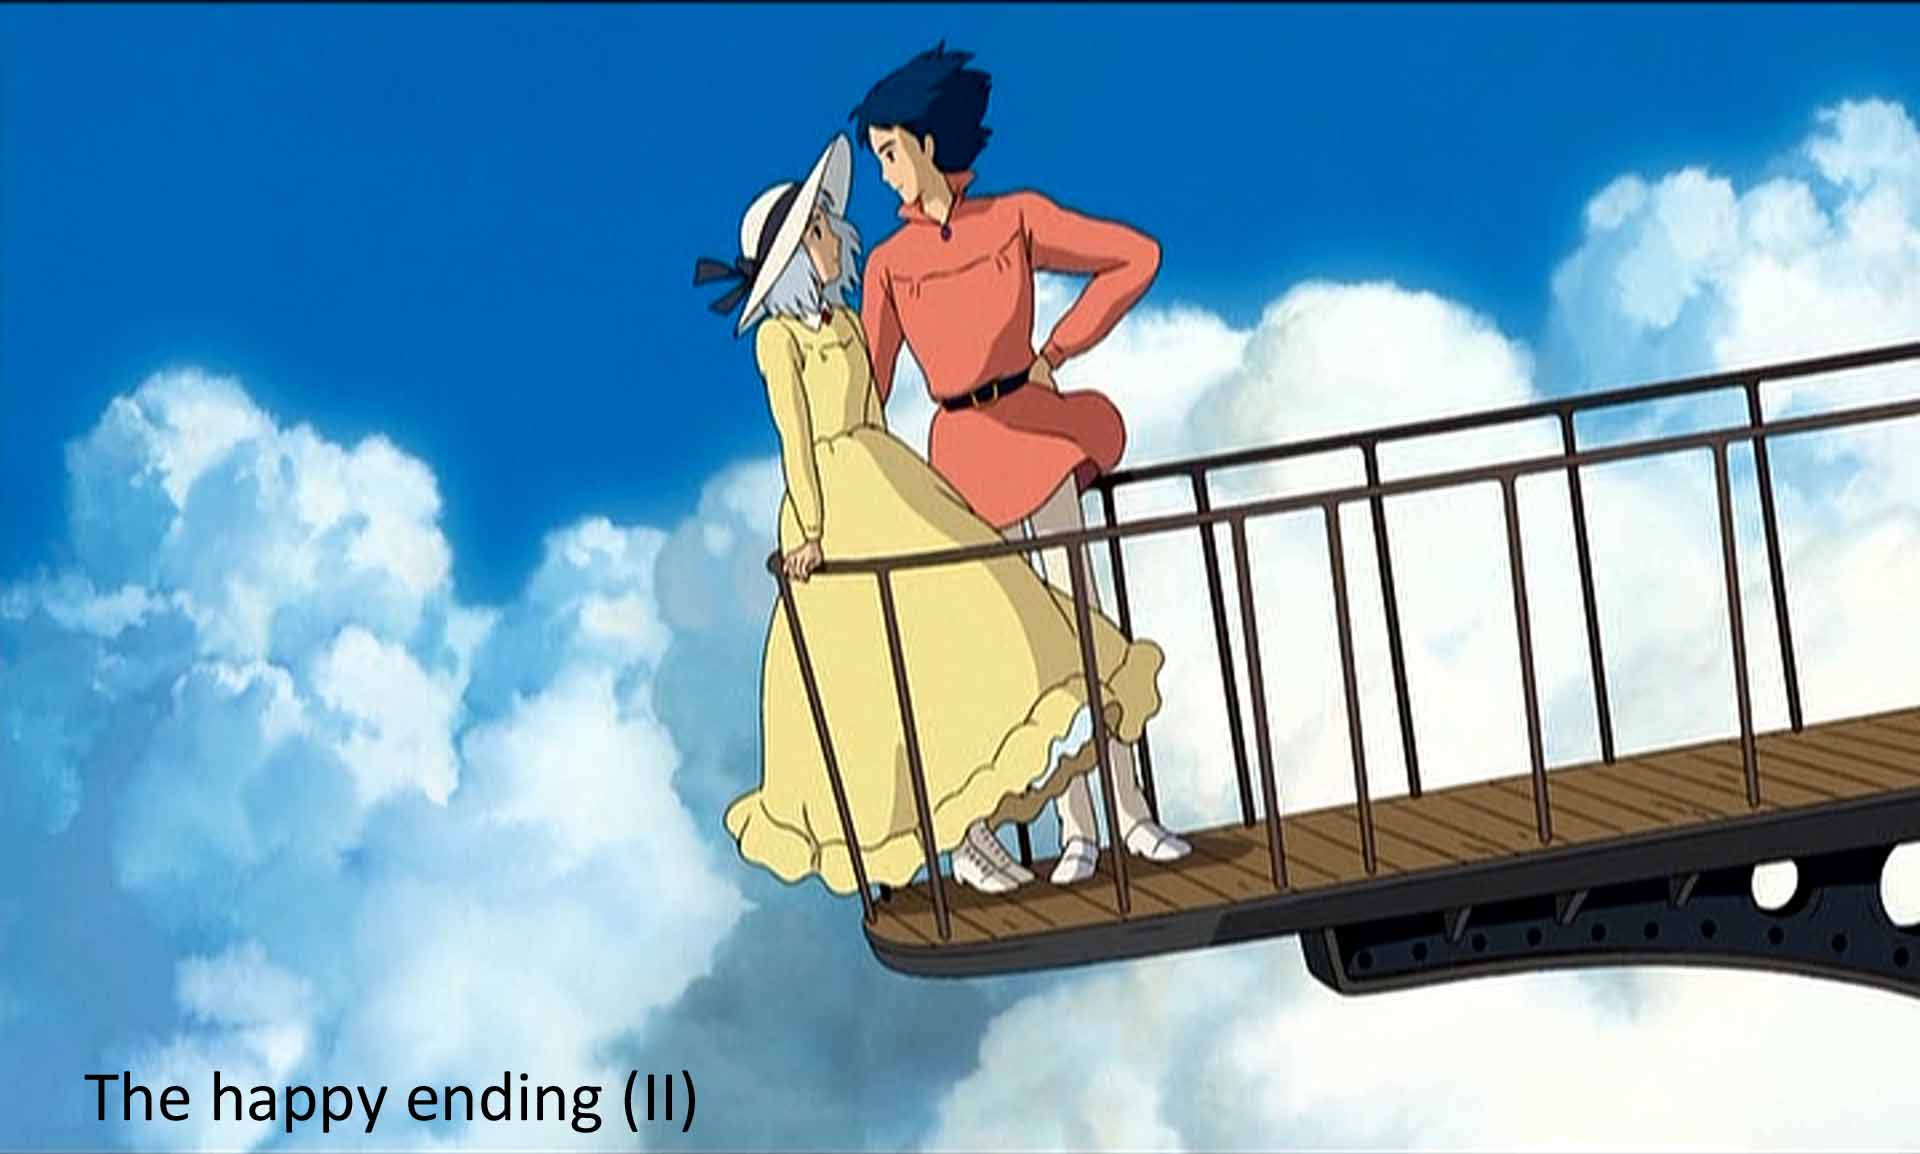 The happy ending (II)